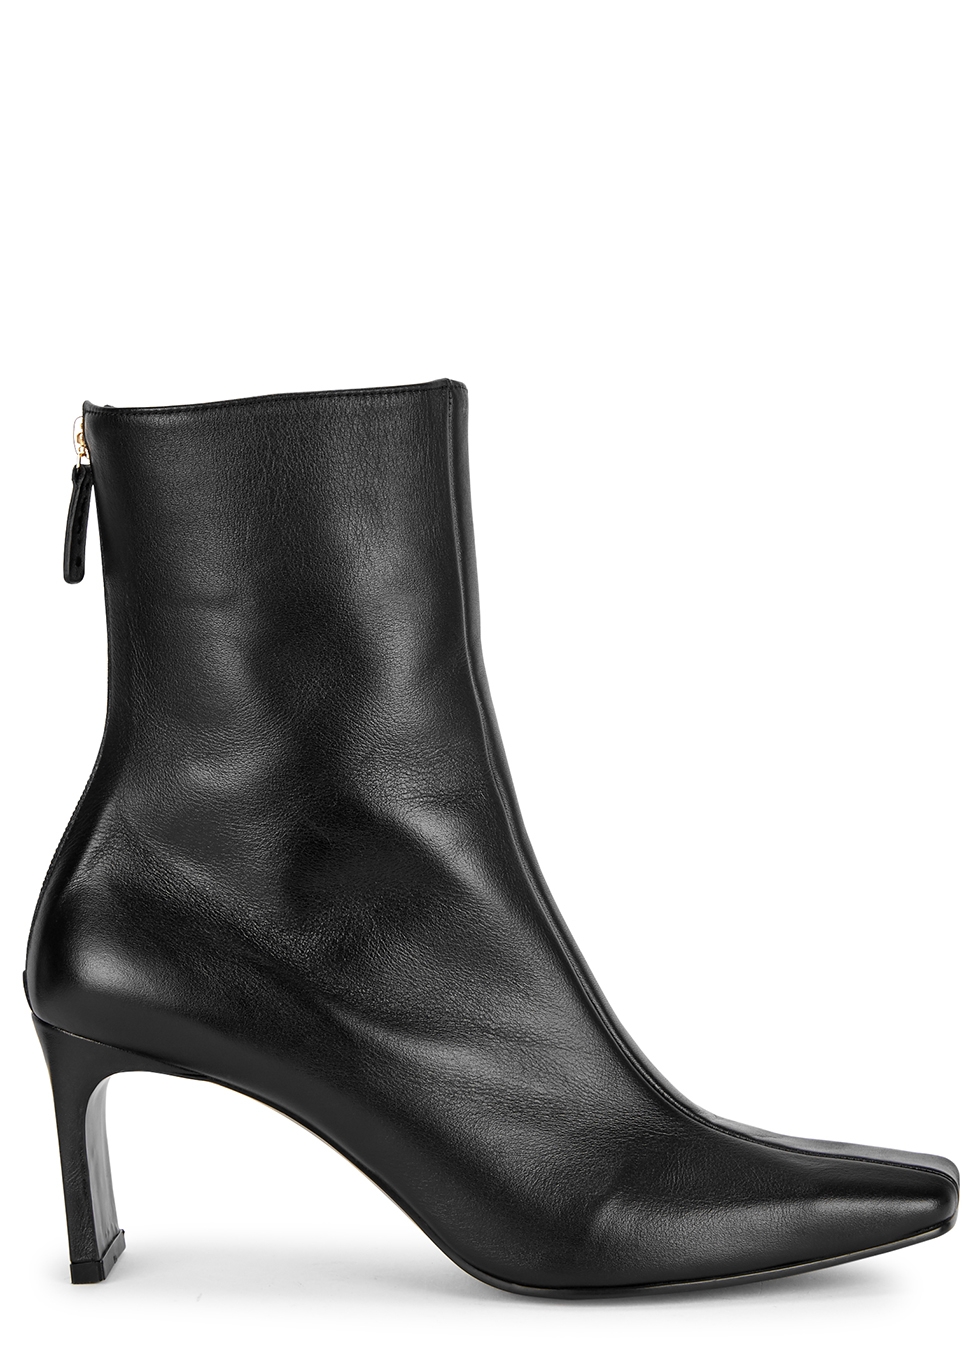 Reike Nen Trim 80 black leather ankle boots - Harvey Nichols